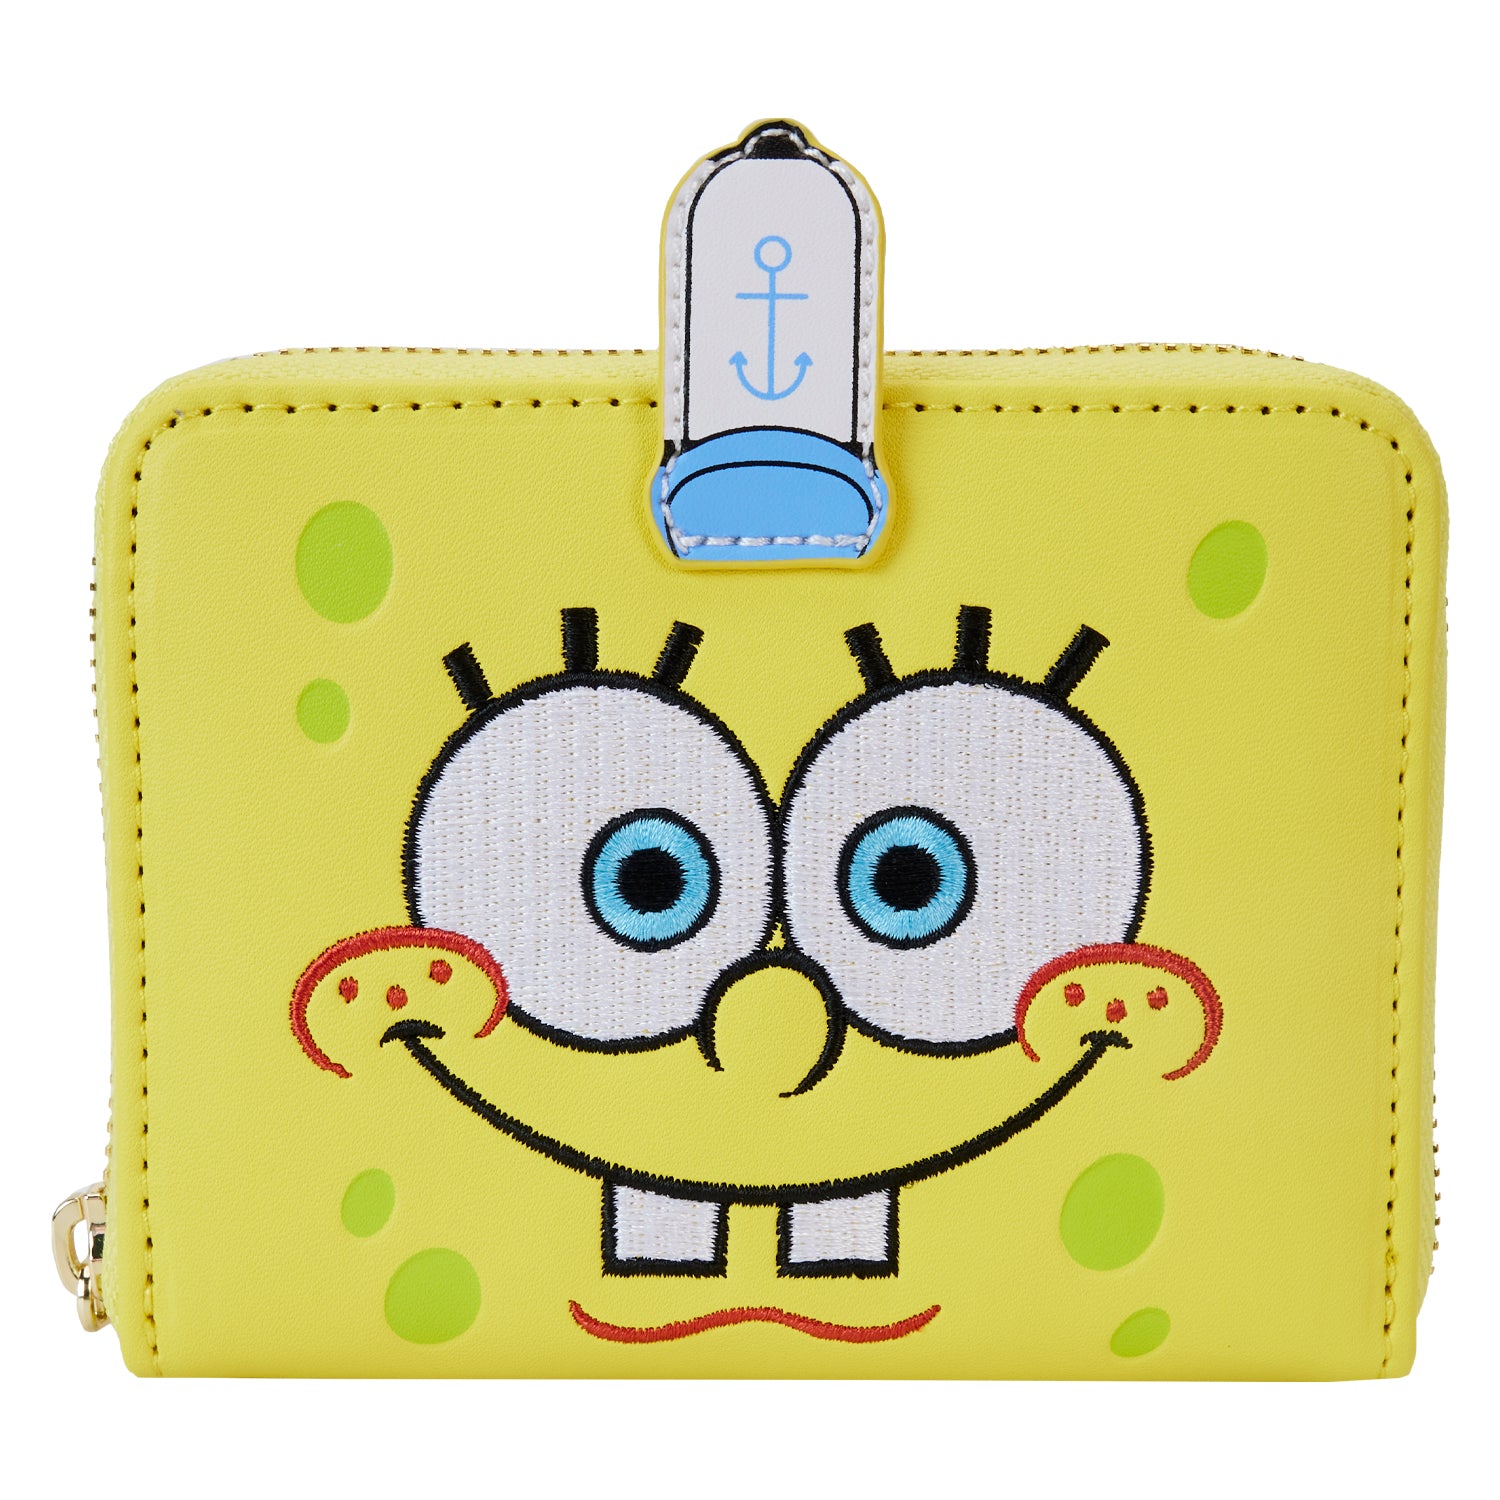 Nickelododeon | Spongebob Squarepants Zip Around Wallet